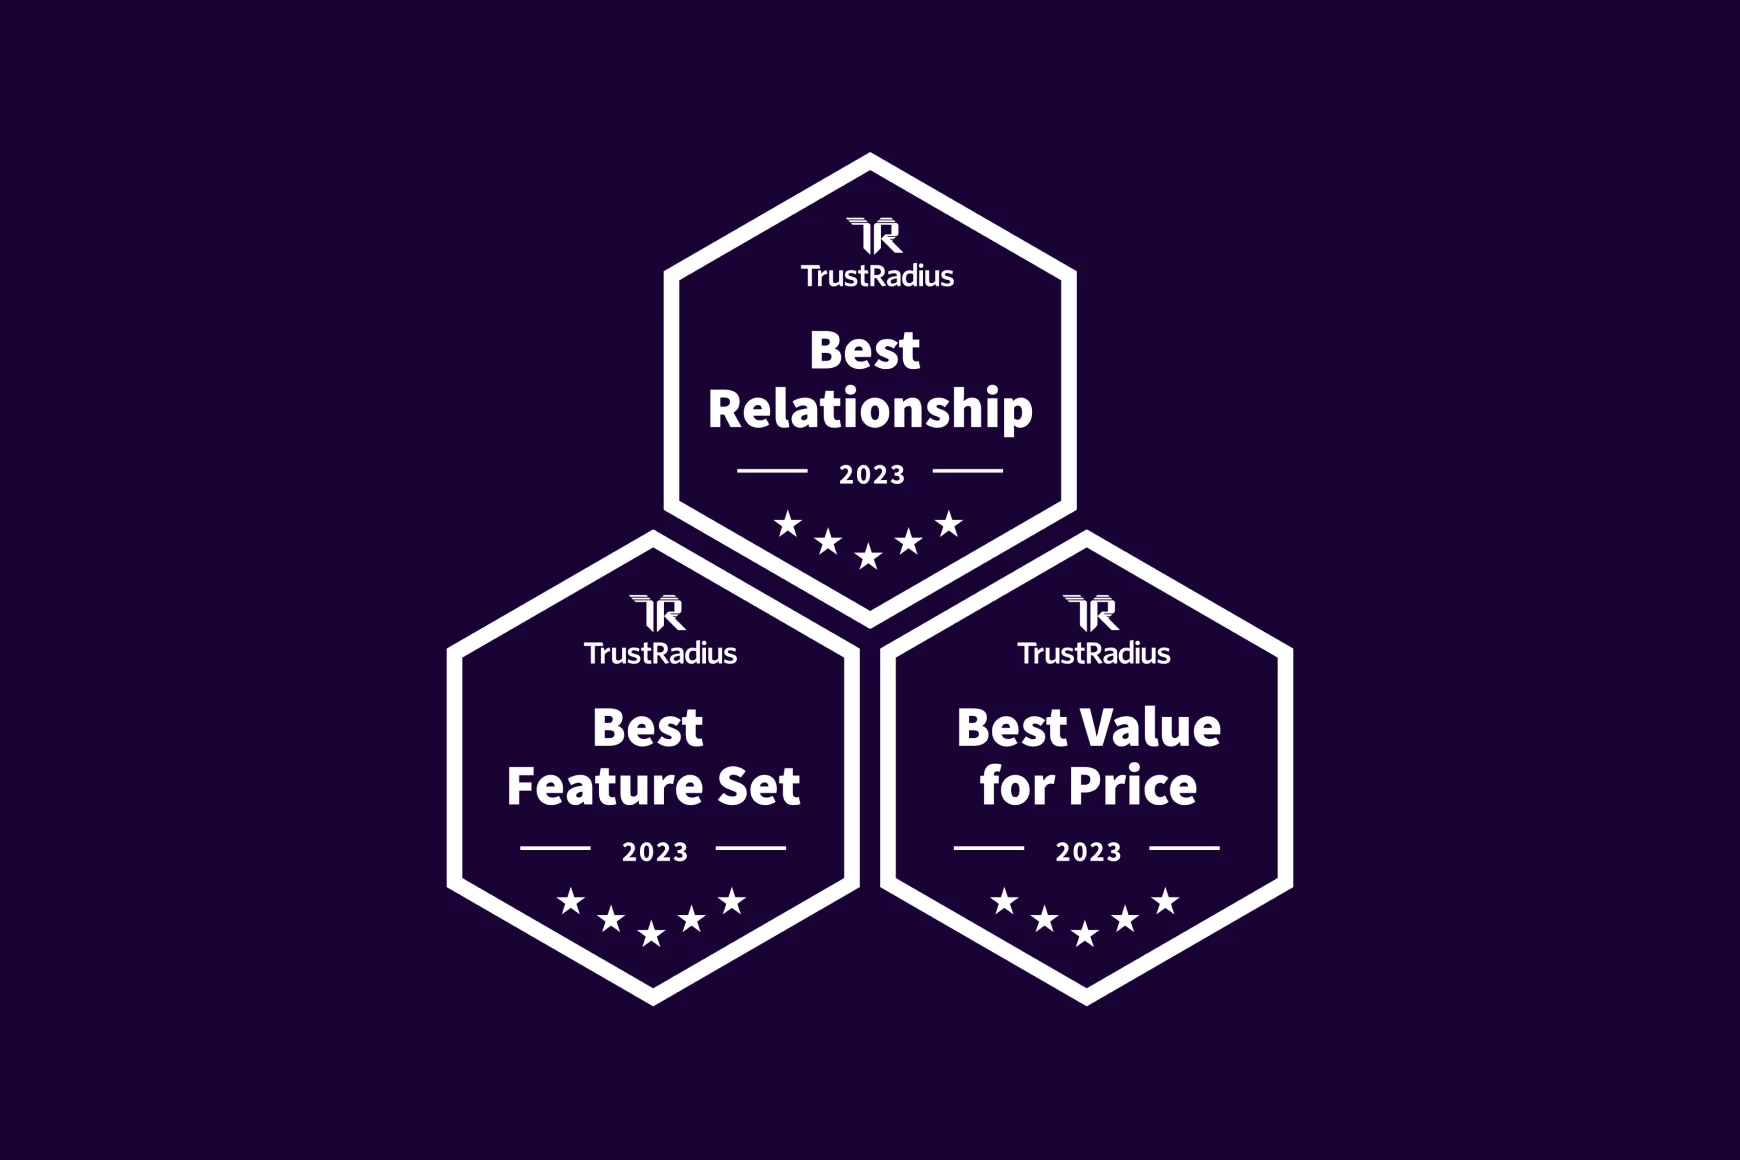 Talkdesk gana los Premios TrustRadius 2023 de Mejor en las categorías de Relación, Valor y Conjunto de Funciones